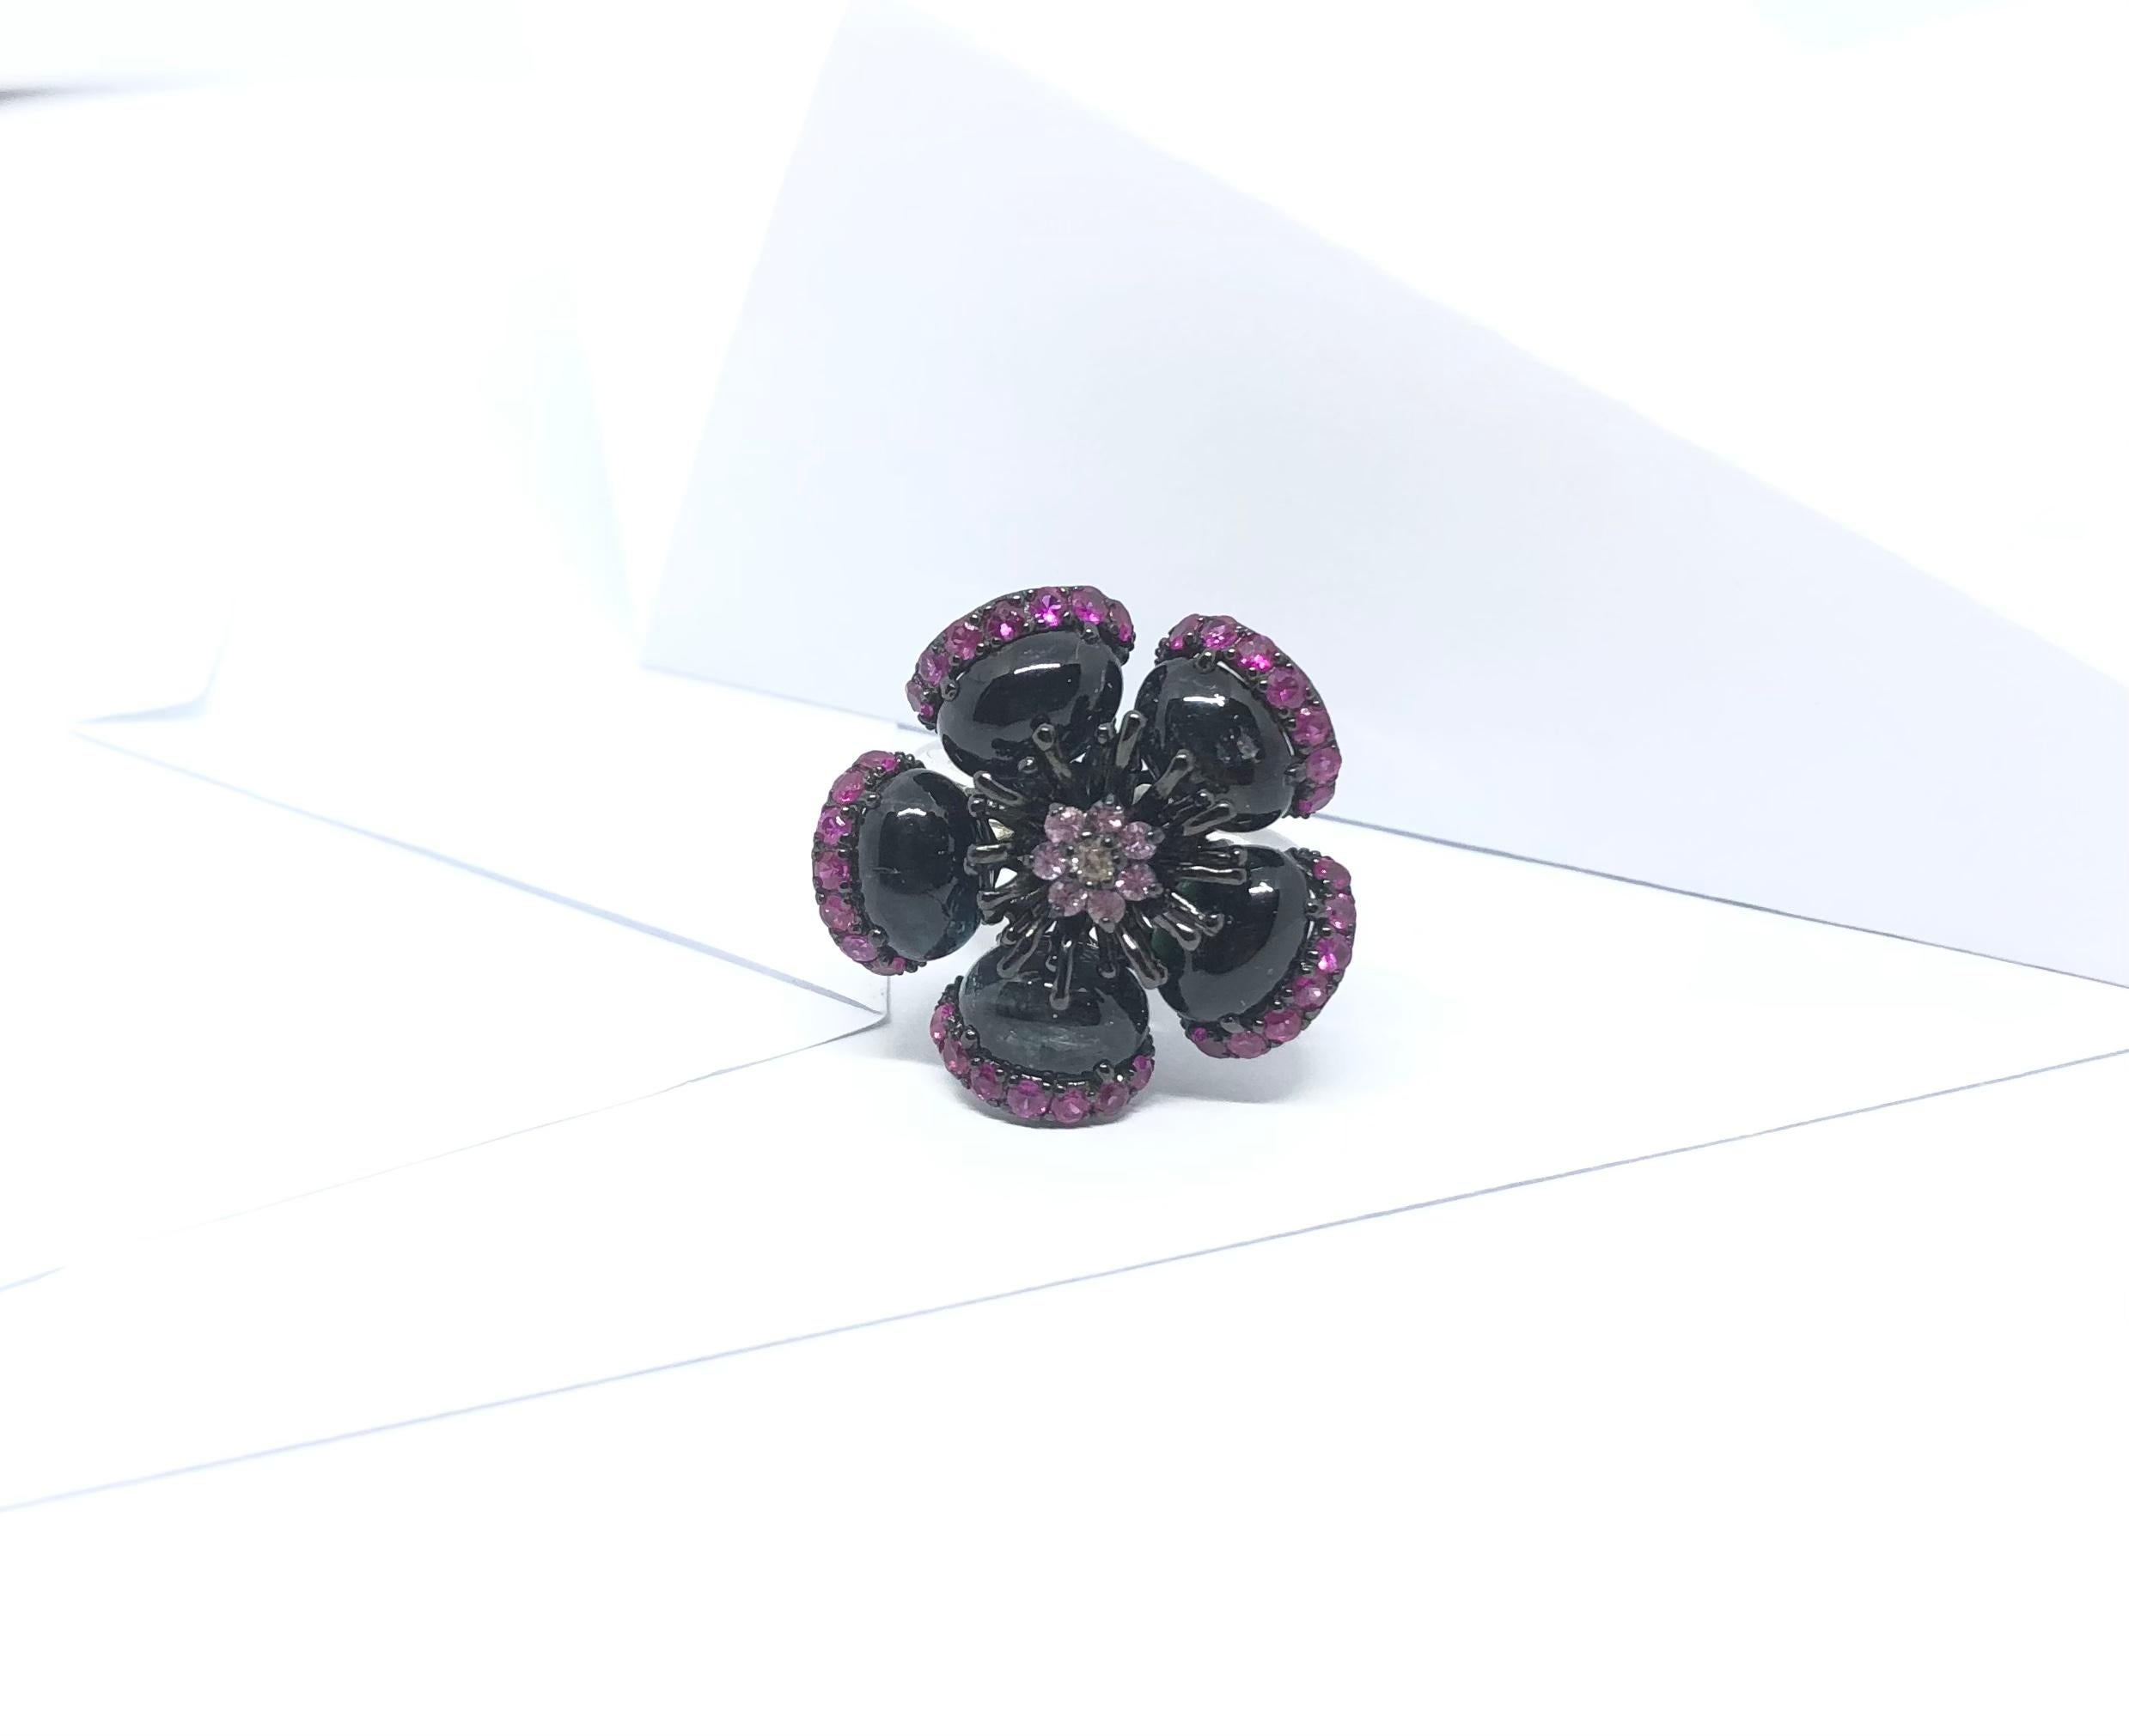 Ring mit Turmalin, Rubin und rosa Saphir in Silberfassung

Breite:  2.6 cm 
Durchmesser: 2,6 cm
Ringgröße: 55
Gesamtgewicht: 11,06 Gramm

Bitte beachten Sie, dass die Silberfassung mit Rhodium versehen ist, um den Glanz zu fördern und die Oxidation